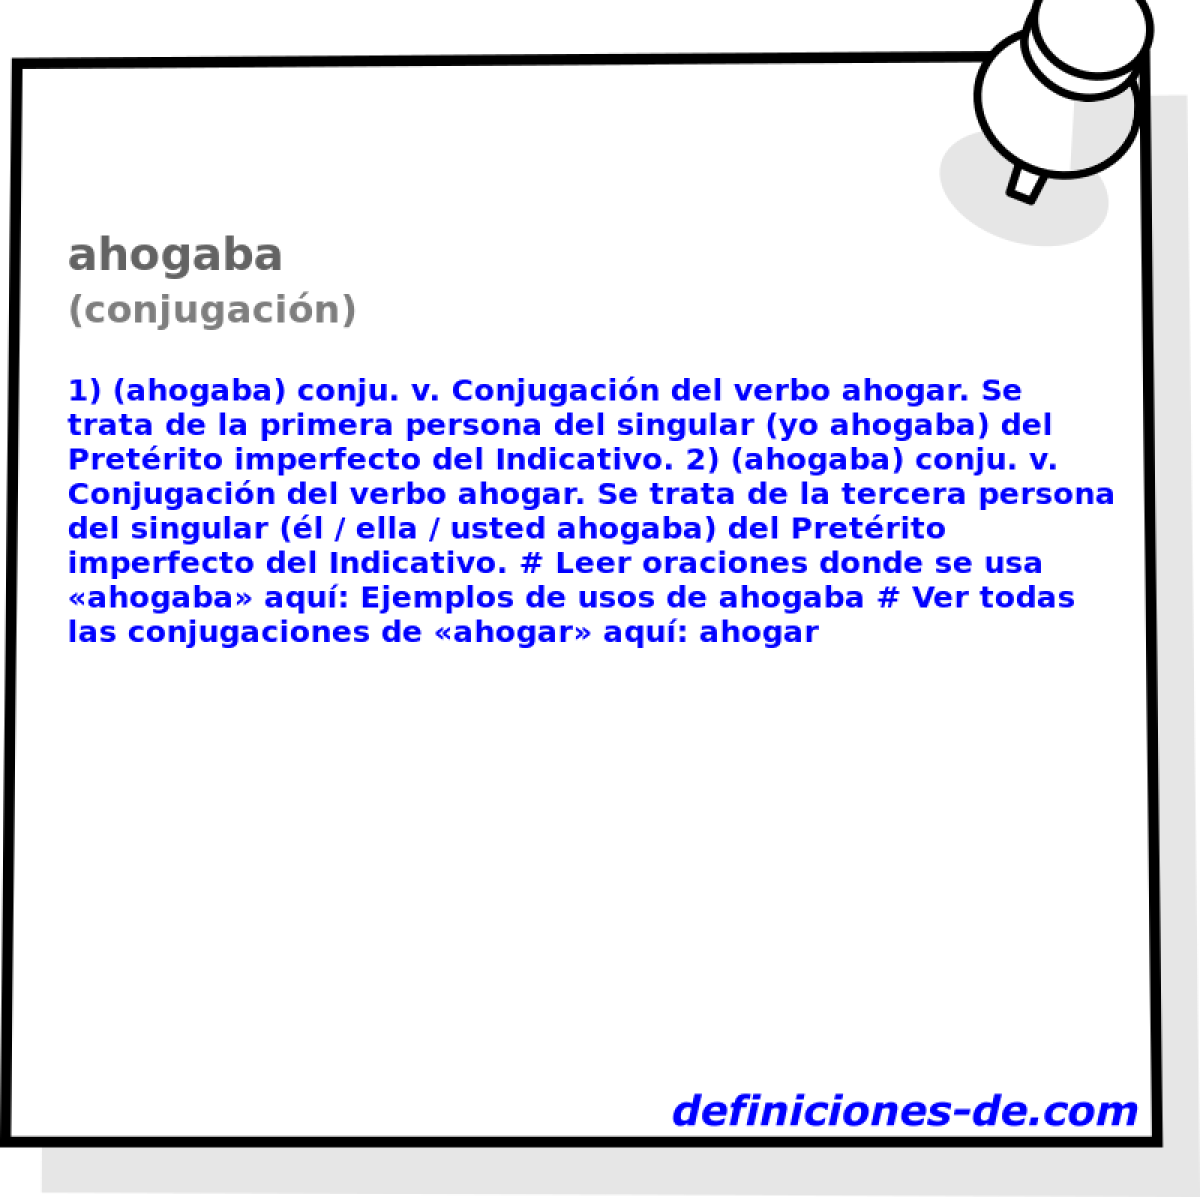 ahogaba (conjugacin)